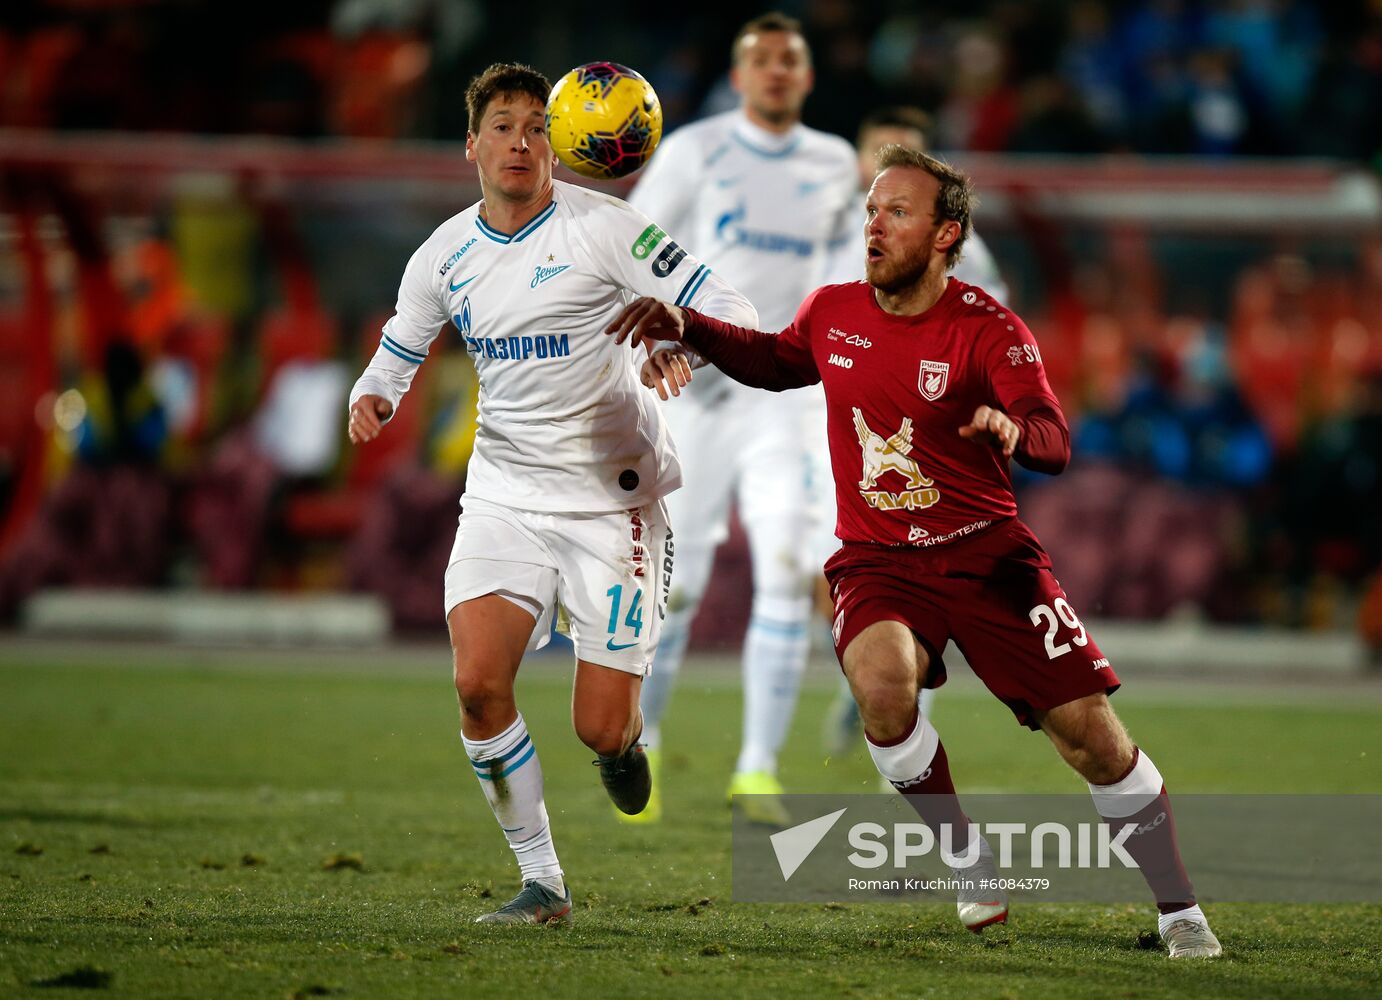 Russia Soccer Premier-League Rubin - Zenit